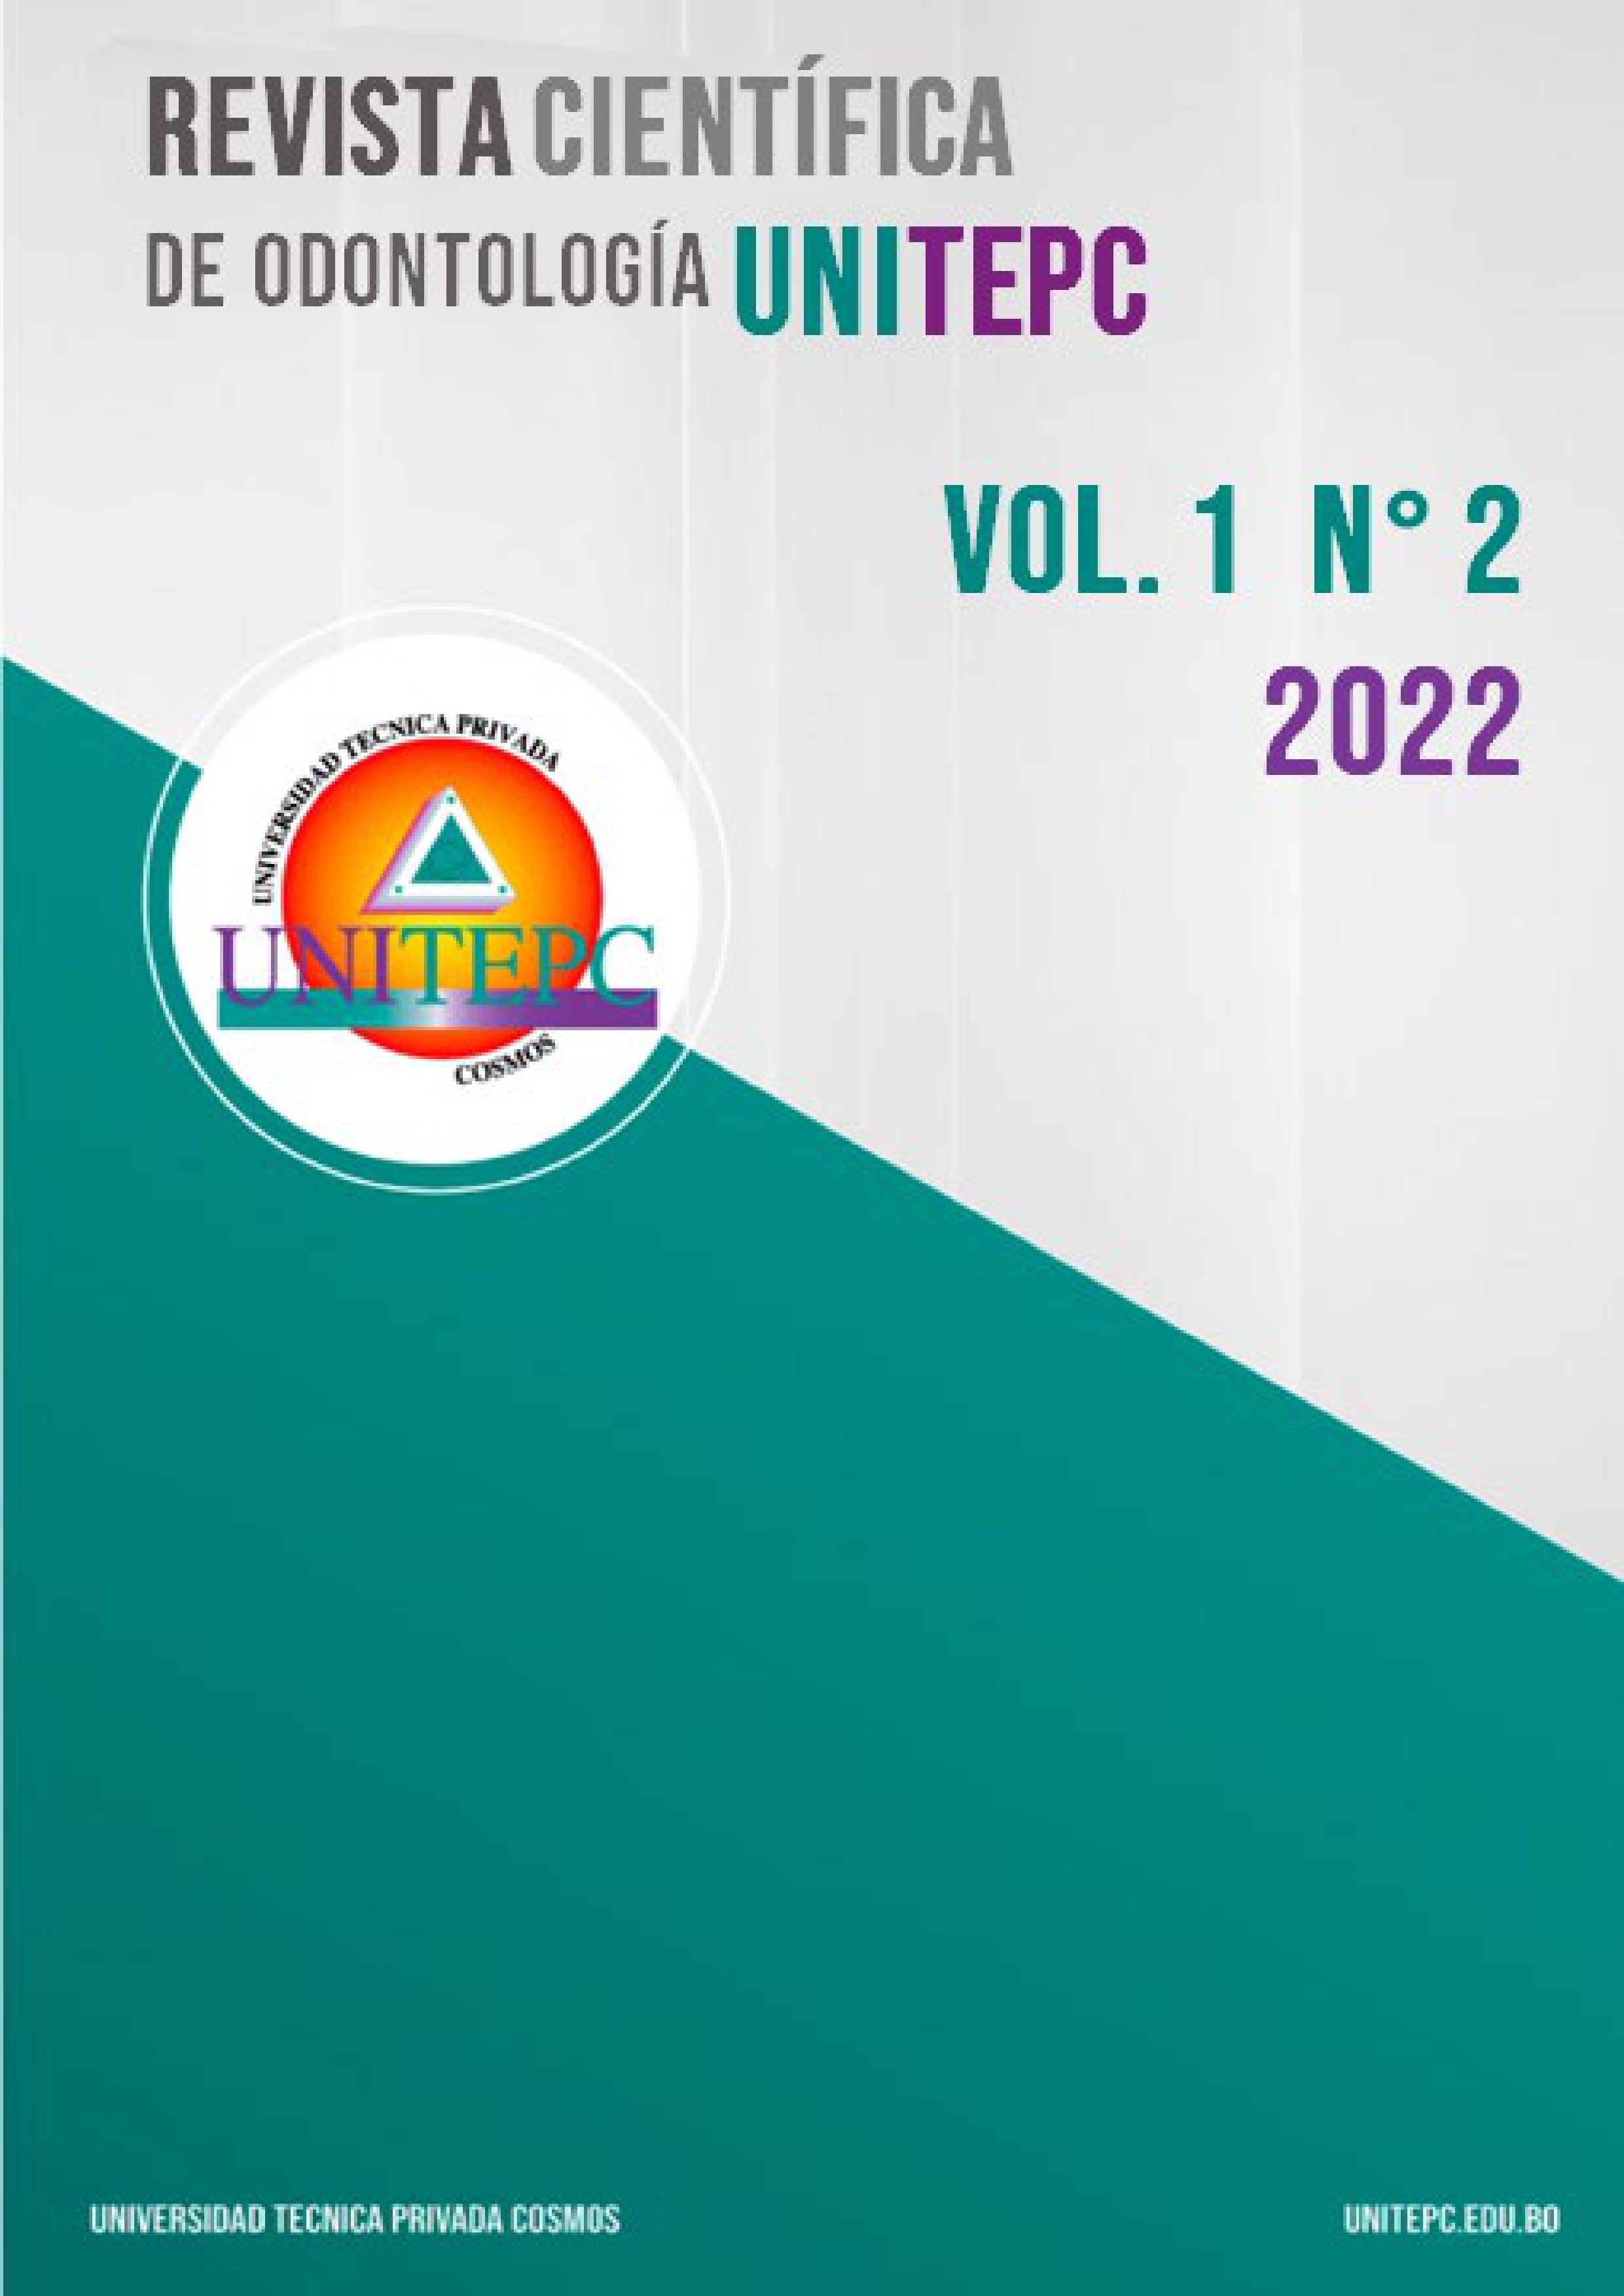 					View Vol. 1 No. 2 (2022): Revista Científica de Odontología UNITEPC
				